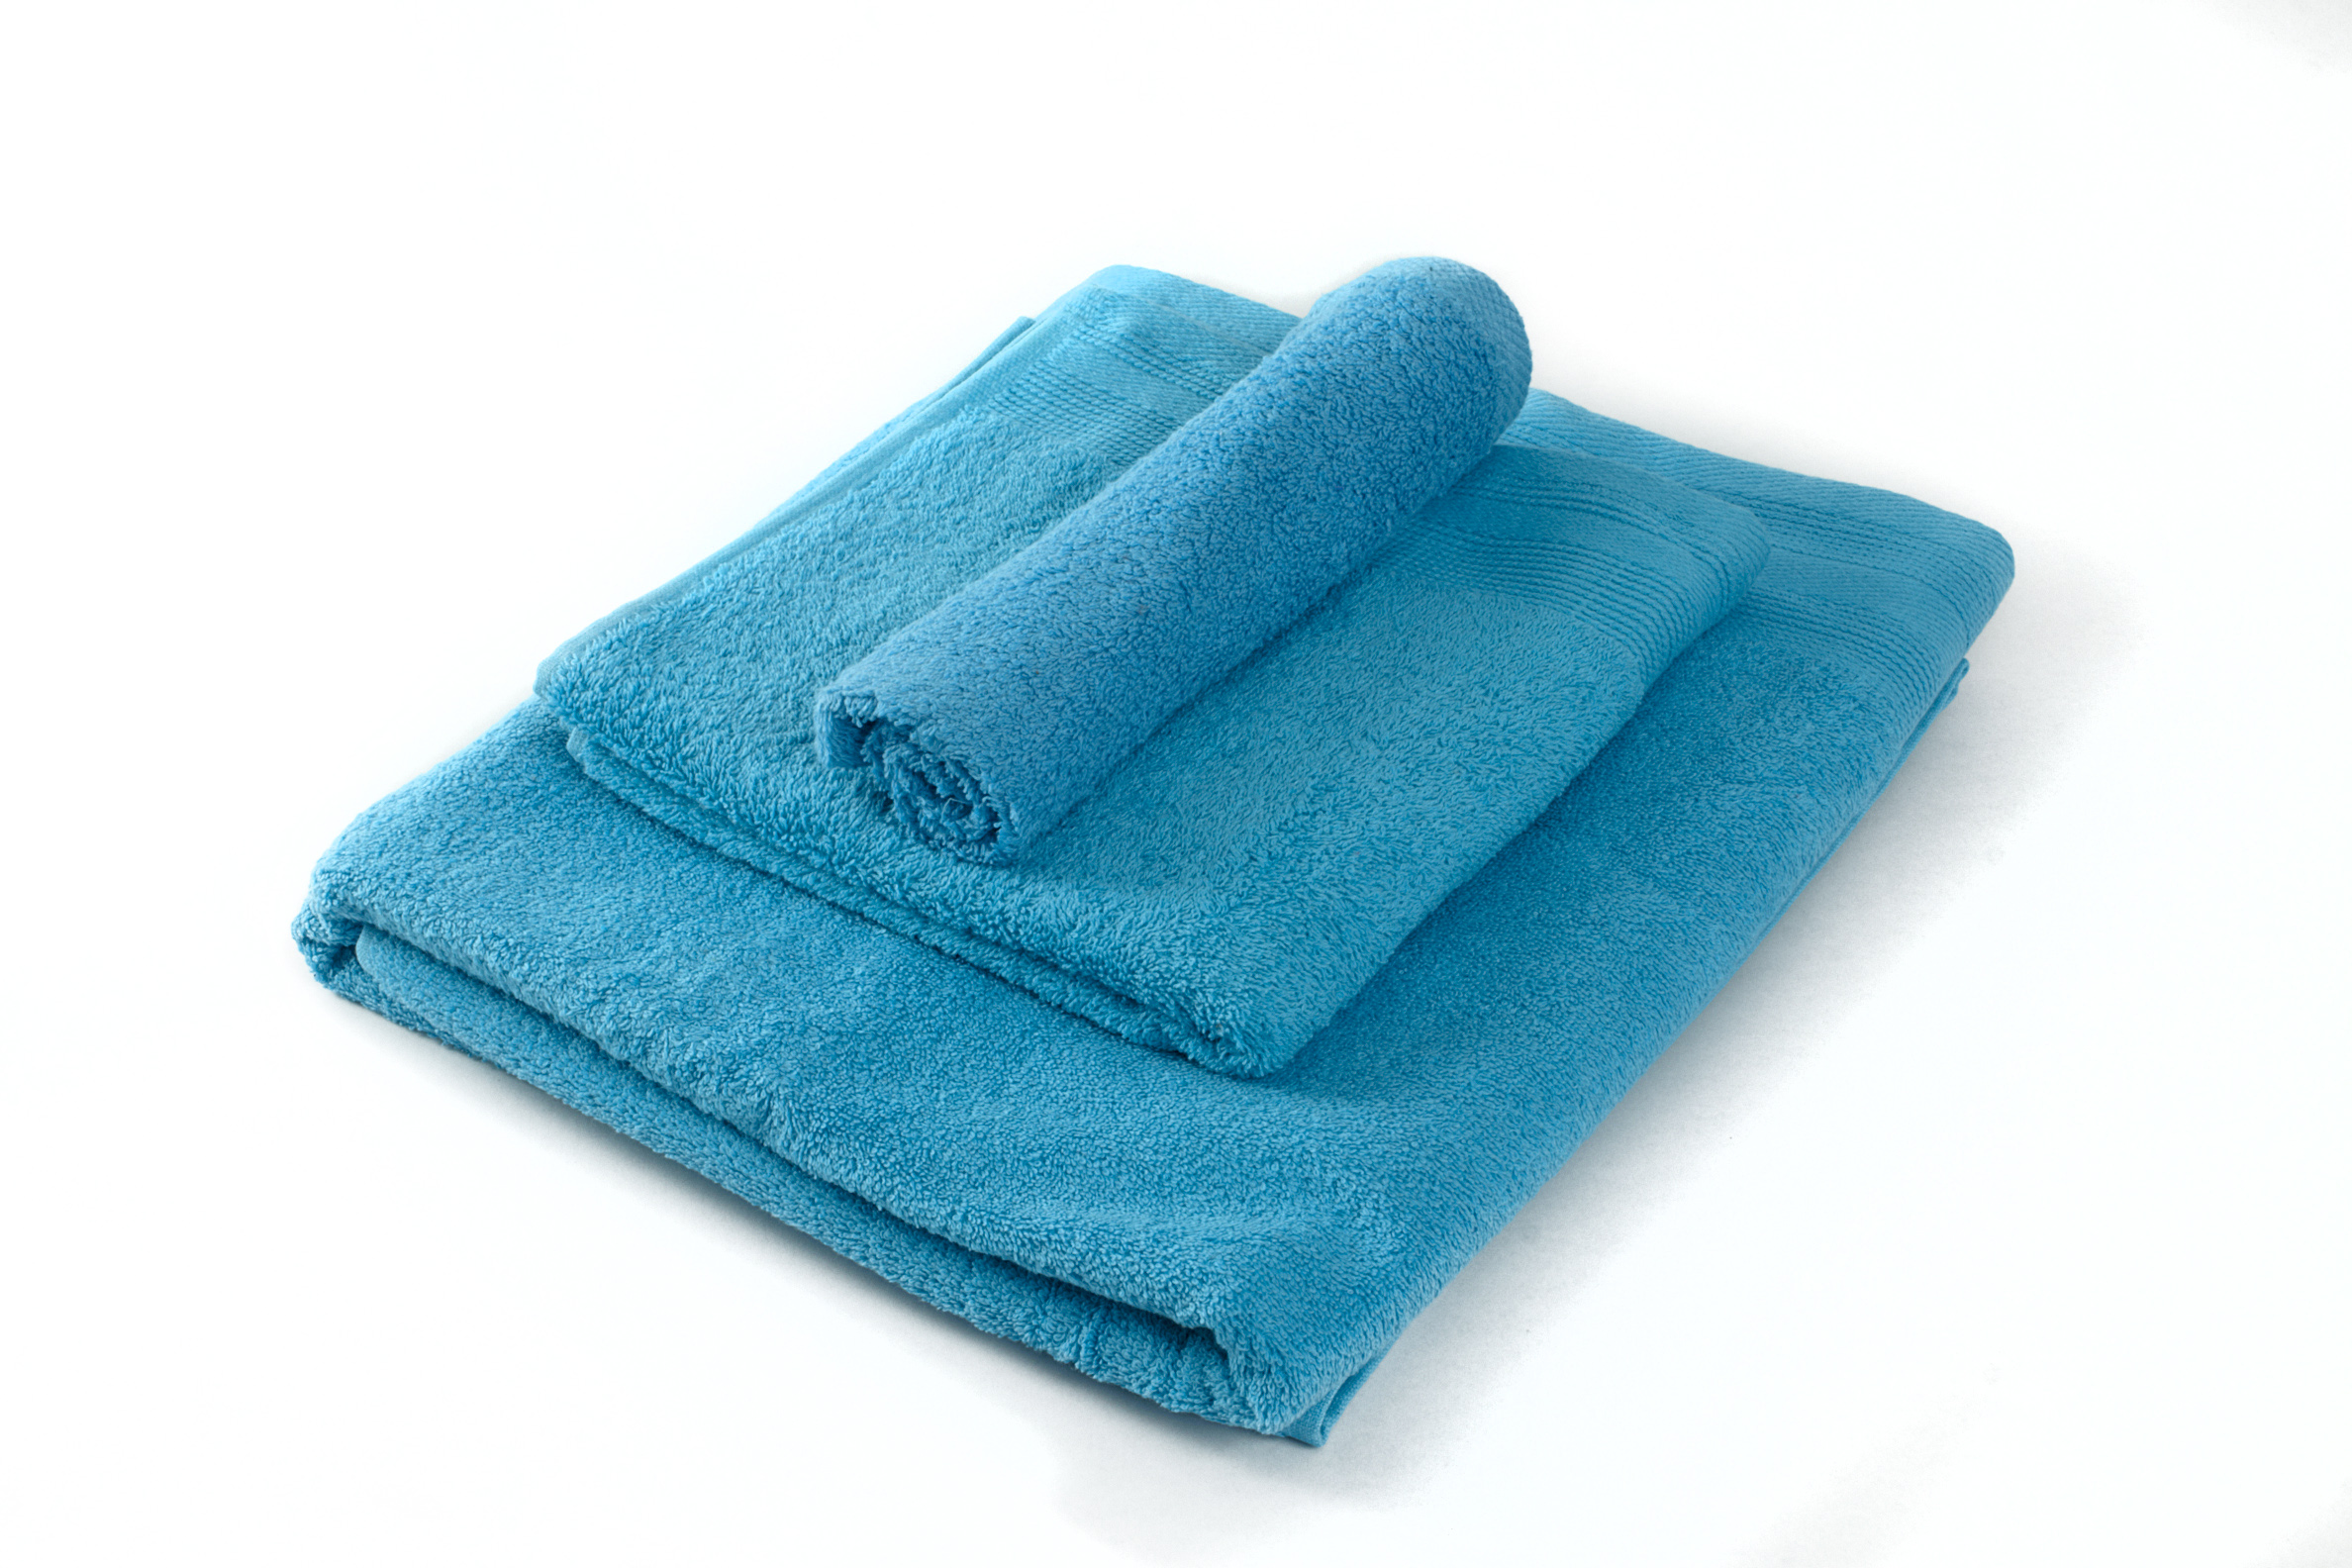 altamente absorbentes para ba/ño 2 toallas de mano Juego de toallas LAZZARO Toallas 2 toallas de mano color gris 100/% algod/ón 500 g//m/² toalla de ducha 2 toallas de ba/ño